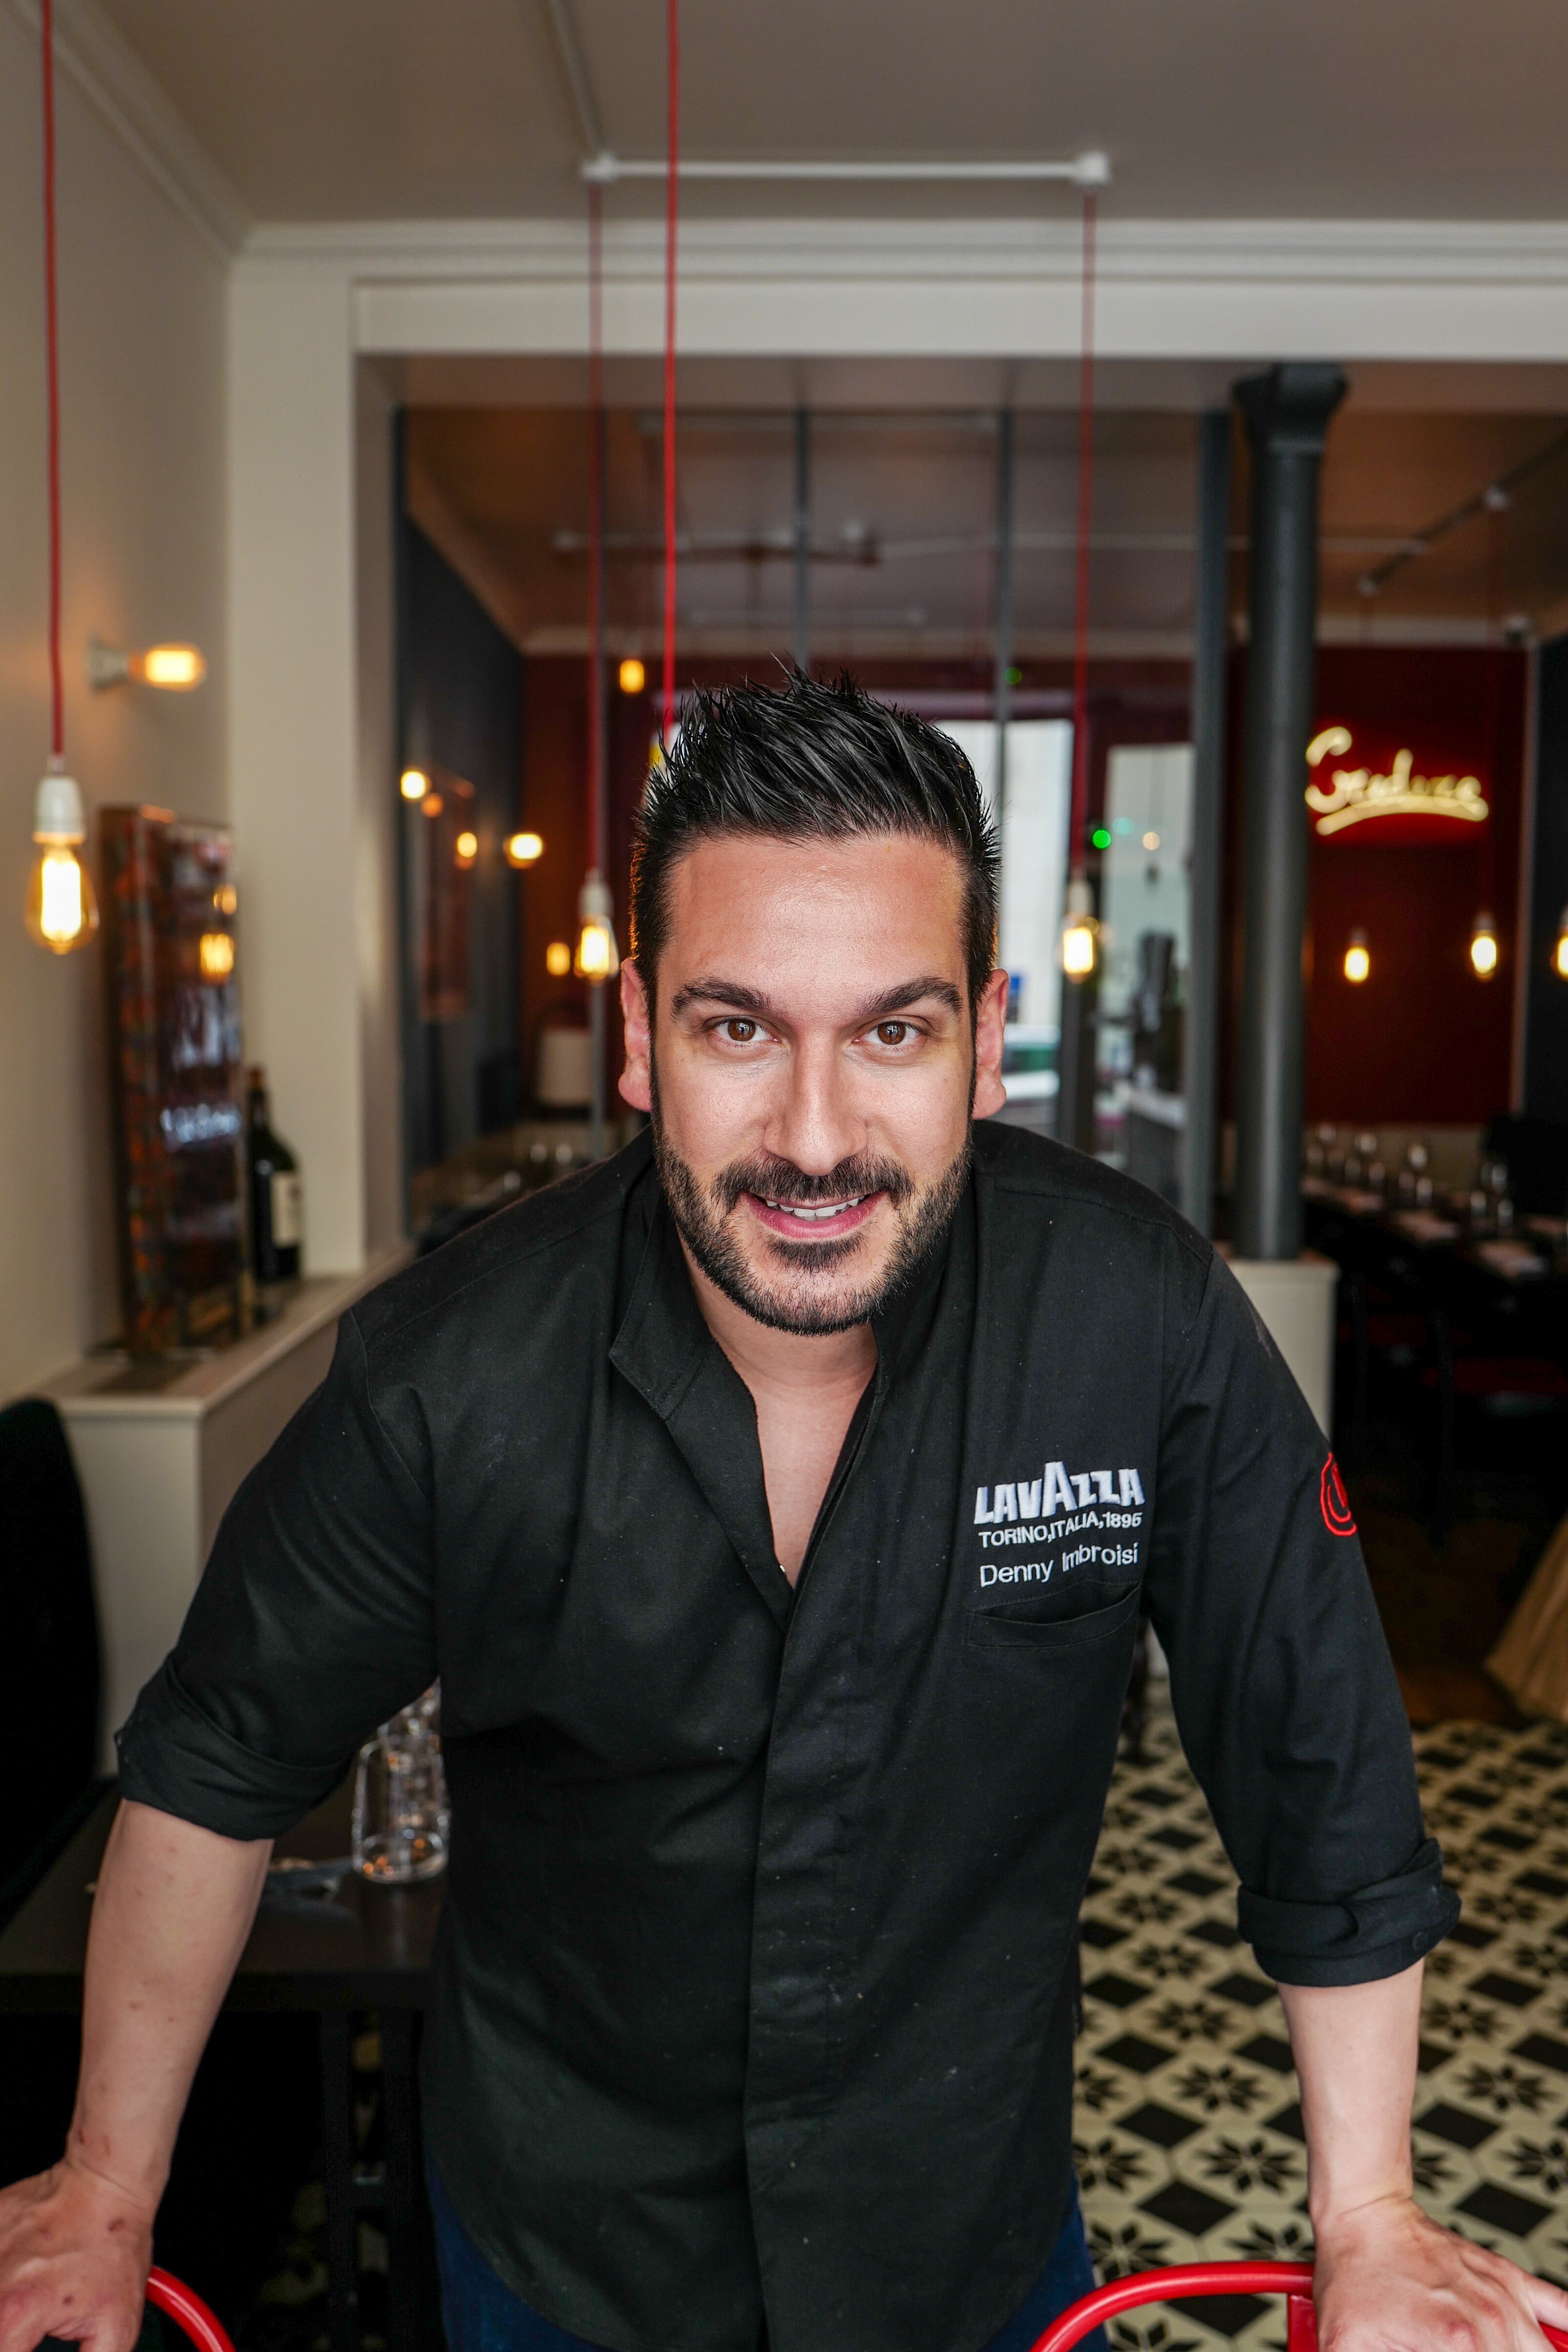 Les bonnes adresses de Denny Imbroisi, chef du restaurant "Ida" - Lifestyle Paris